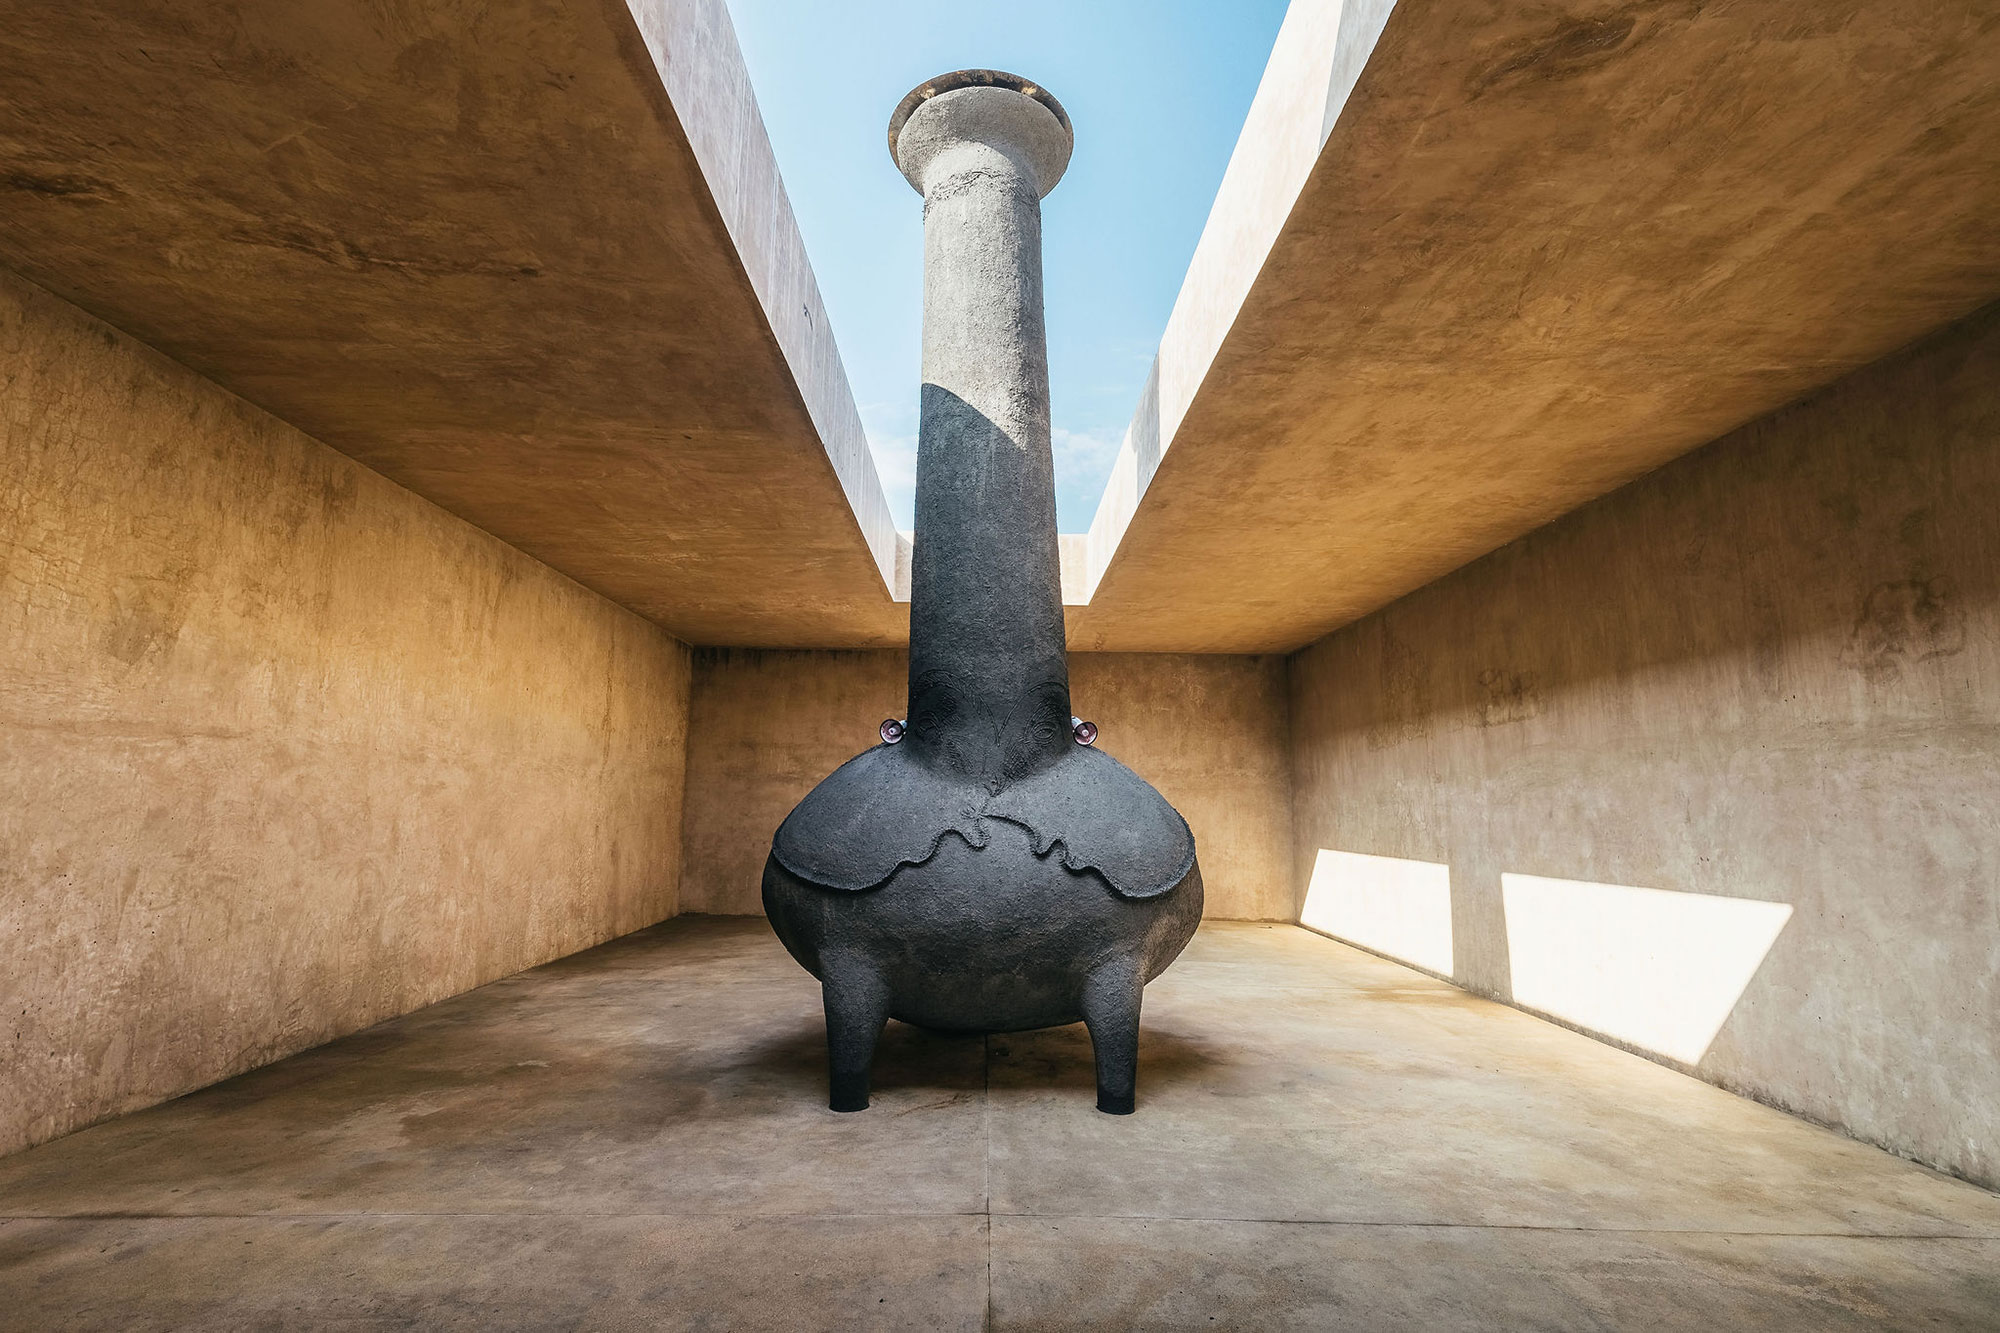 A monolithic sculpture installed in an open-air atrium - Gessato